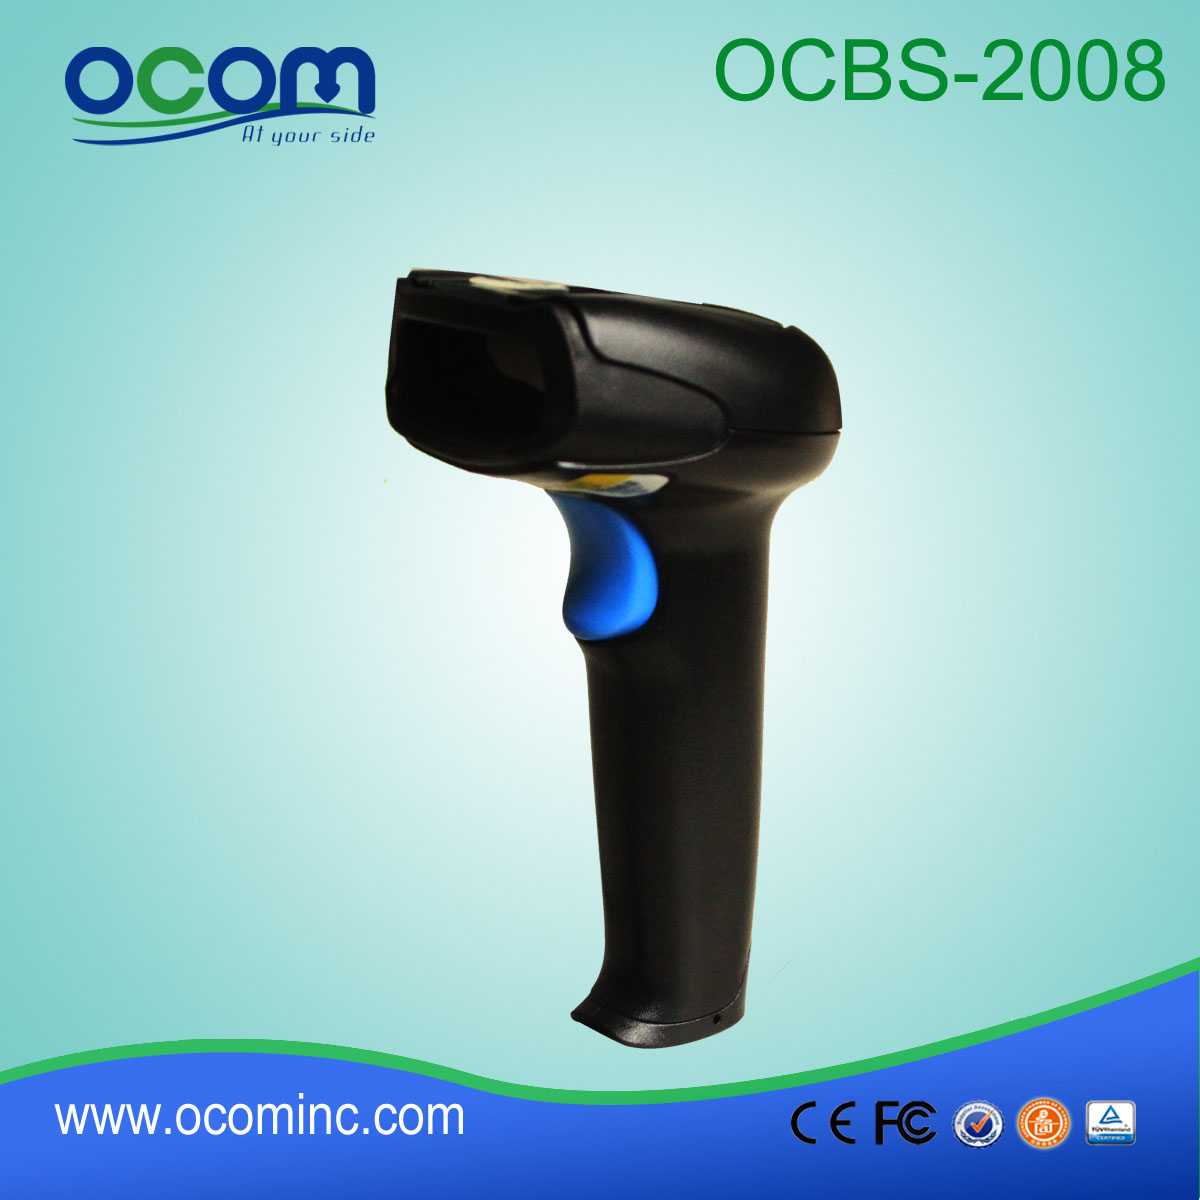 OCBs-2008 scanner de alta velocidade de digitalização Handheld 2d industrial de código de barras